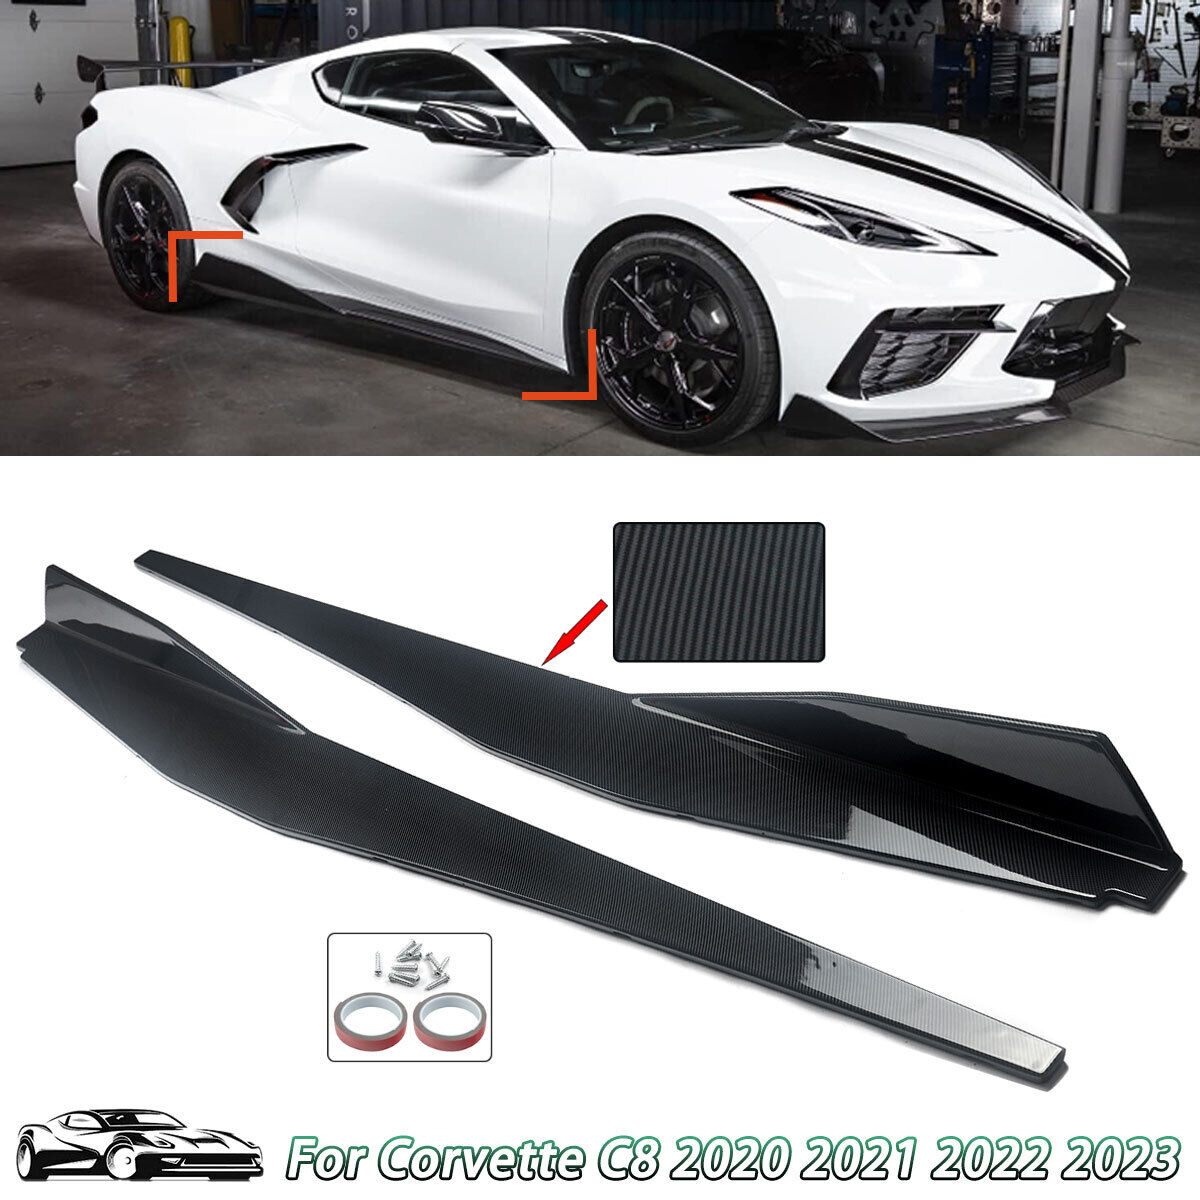 For 2020-2023 Corvette C8 Carbon Fiber Style Side Skirts Extension Lip Splitter